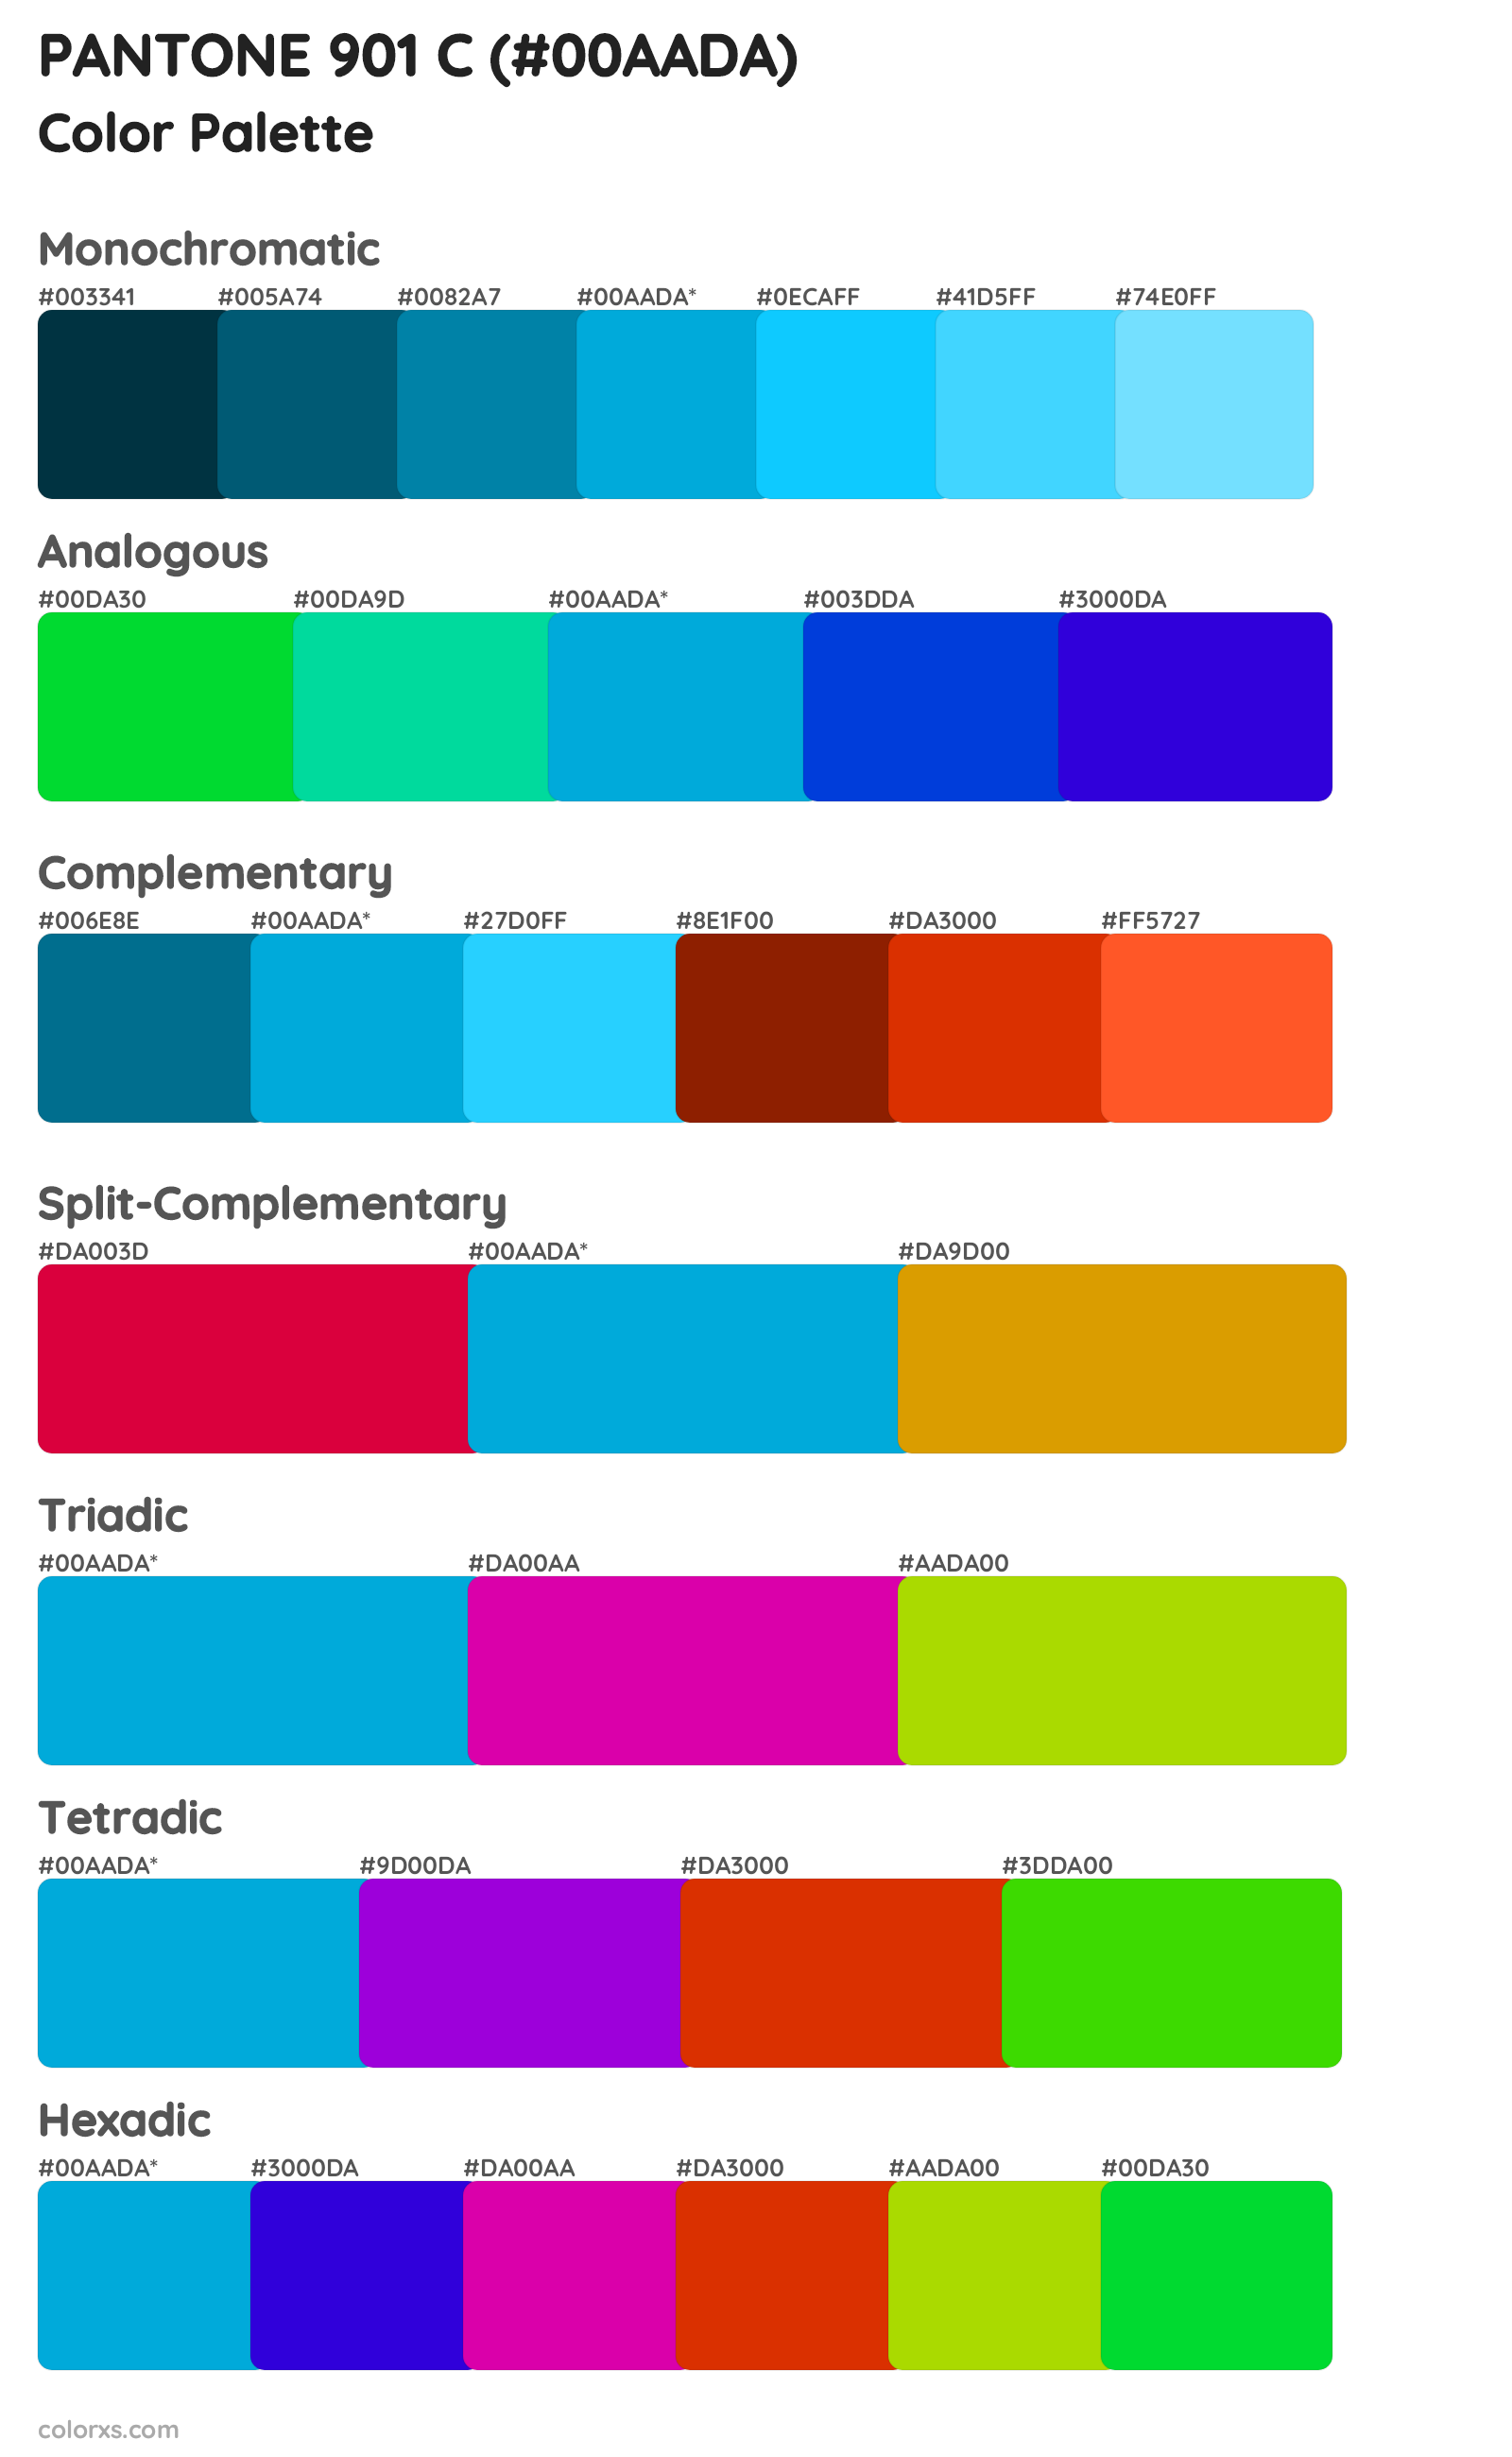 PANTONE 901 C Color Scheme Palettes